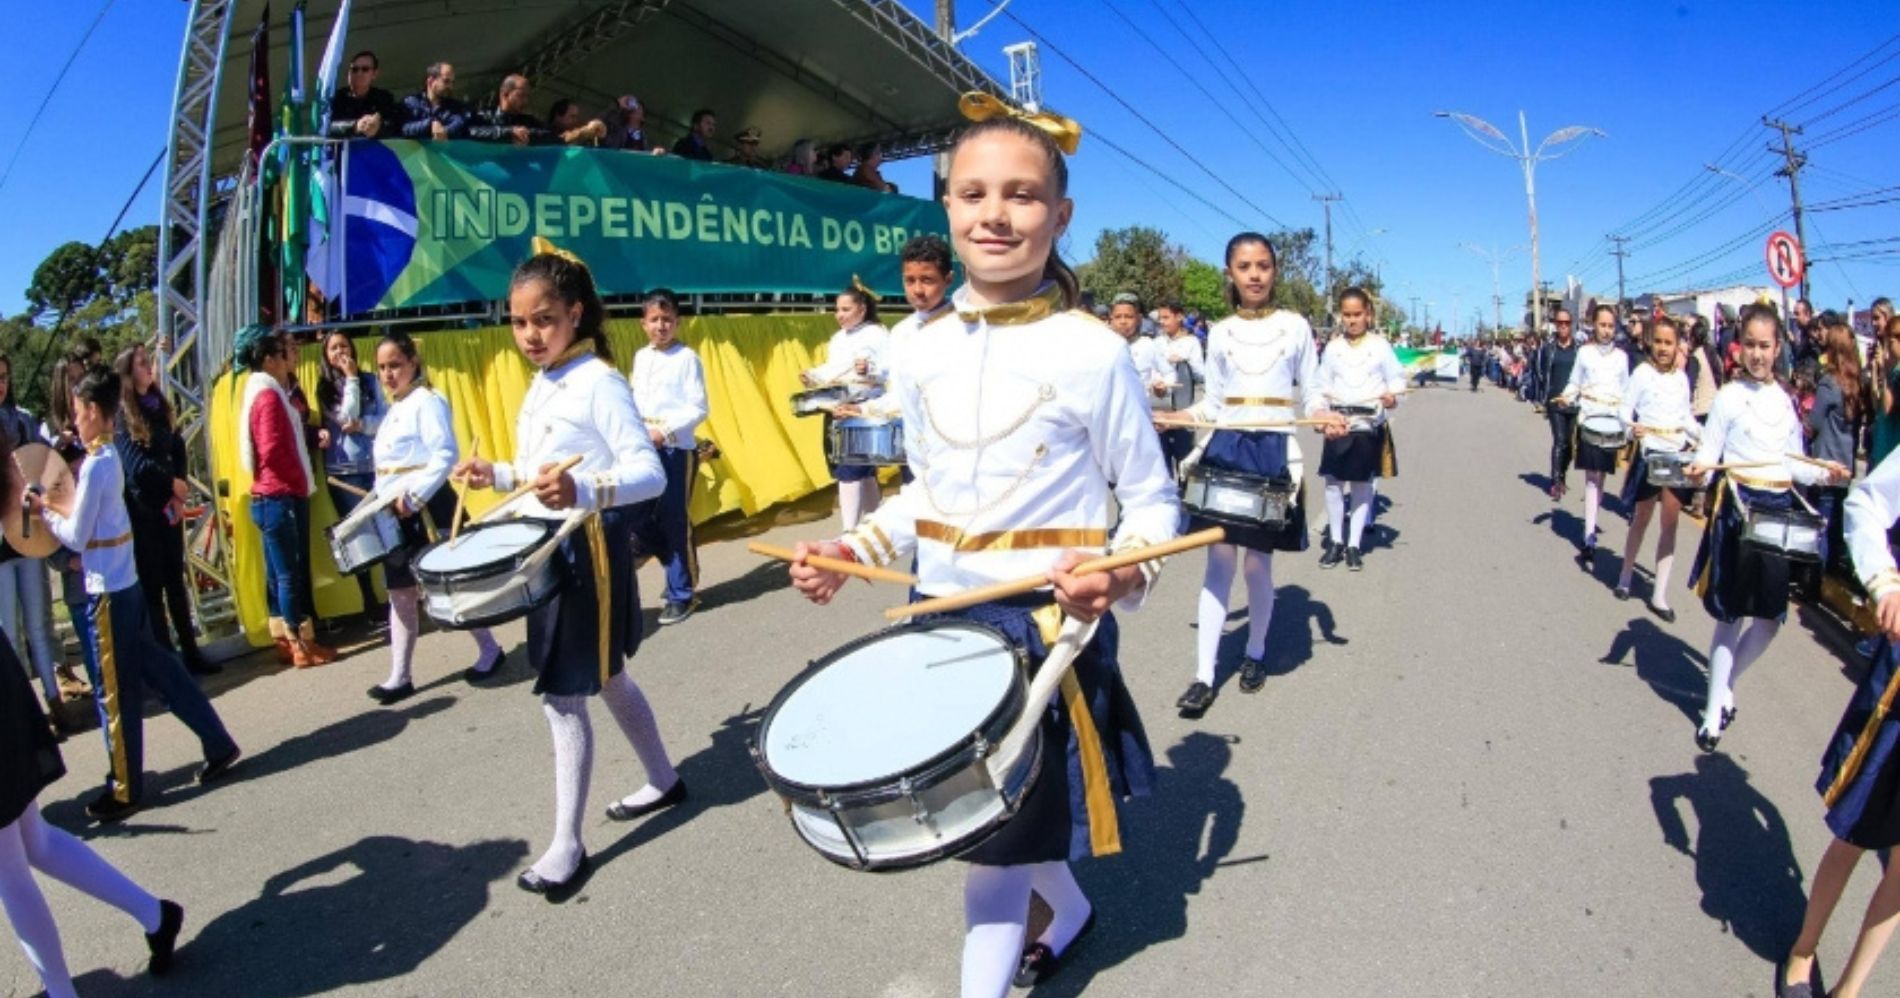 Inscrições Abertas para o Desfile Cívico da Independência deste Ano promovido pela Prefeitura de Piraquara